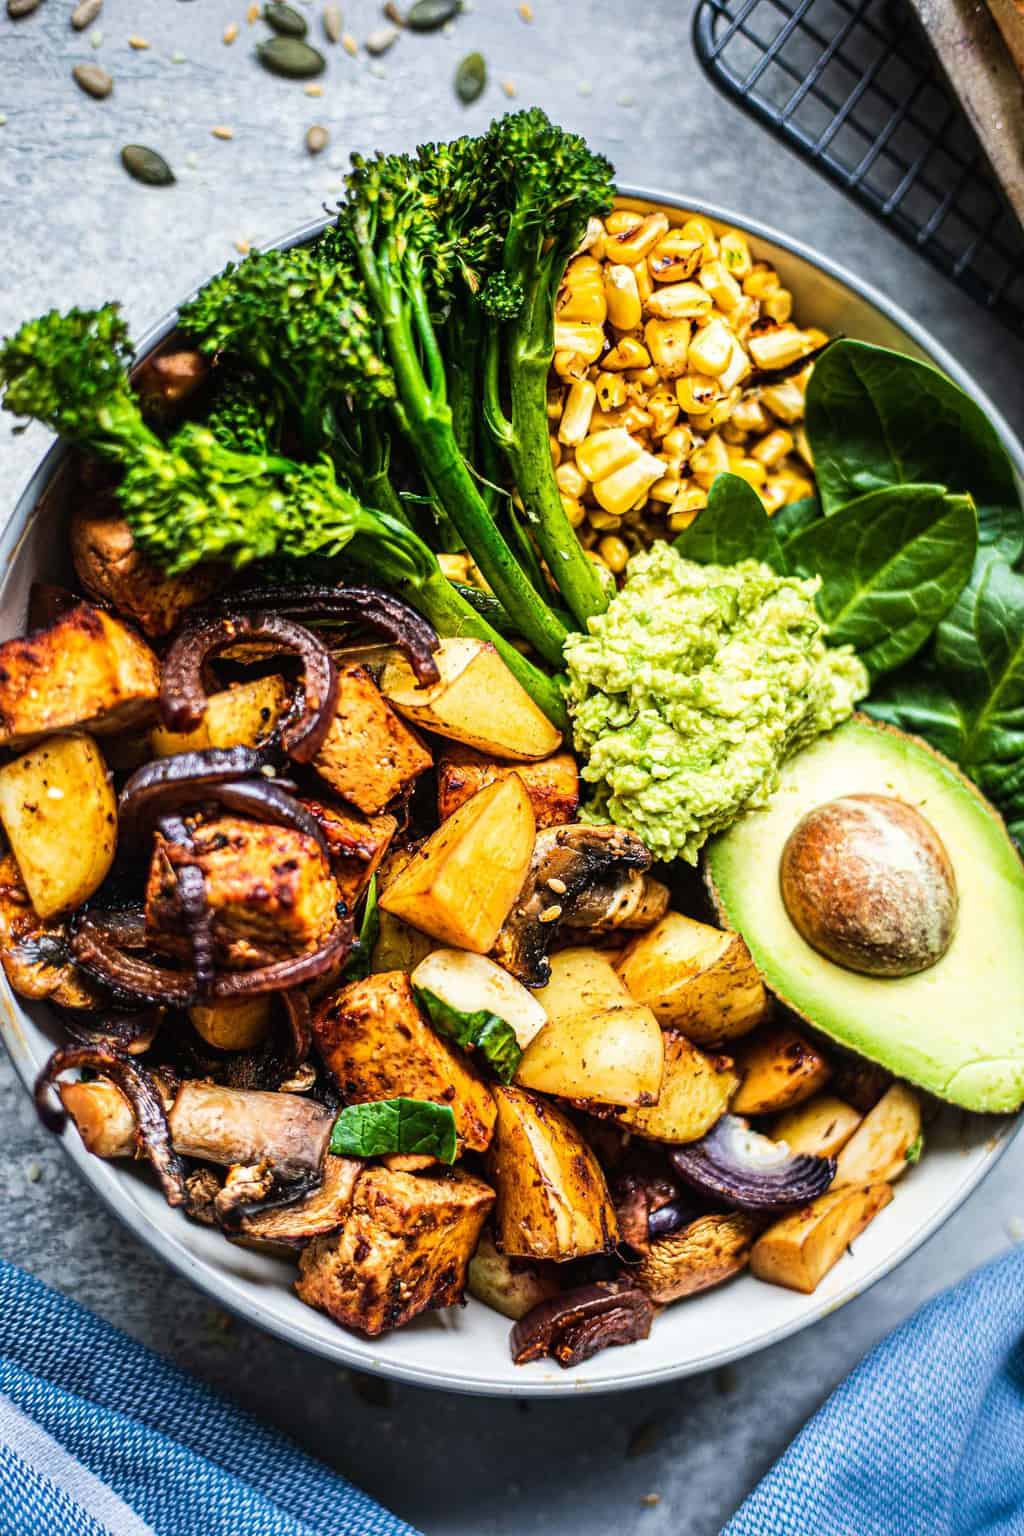 Bowl with vegan sheet pan dinner